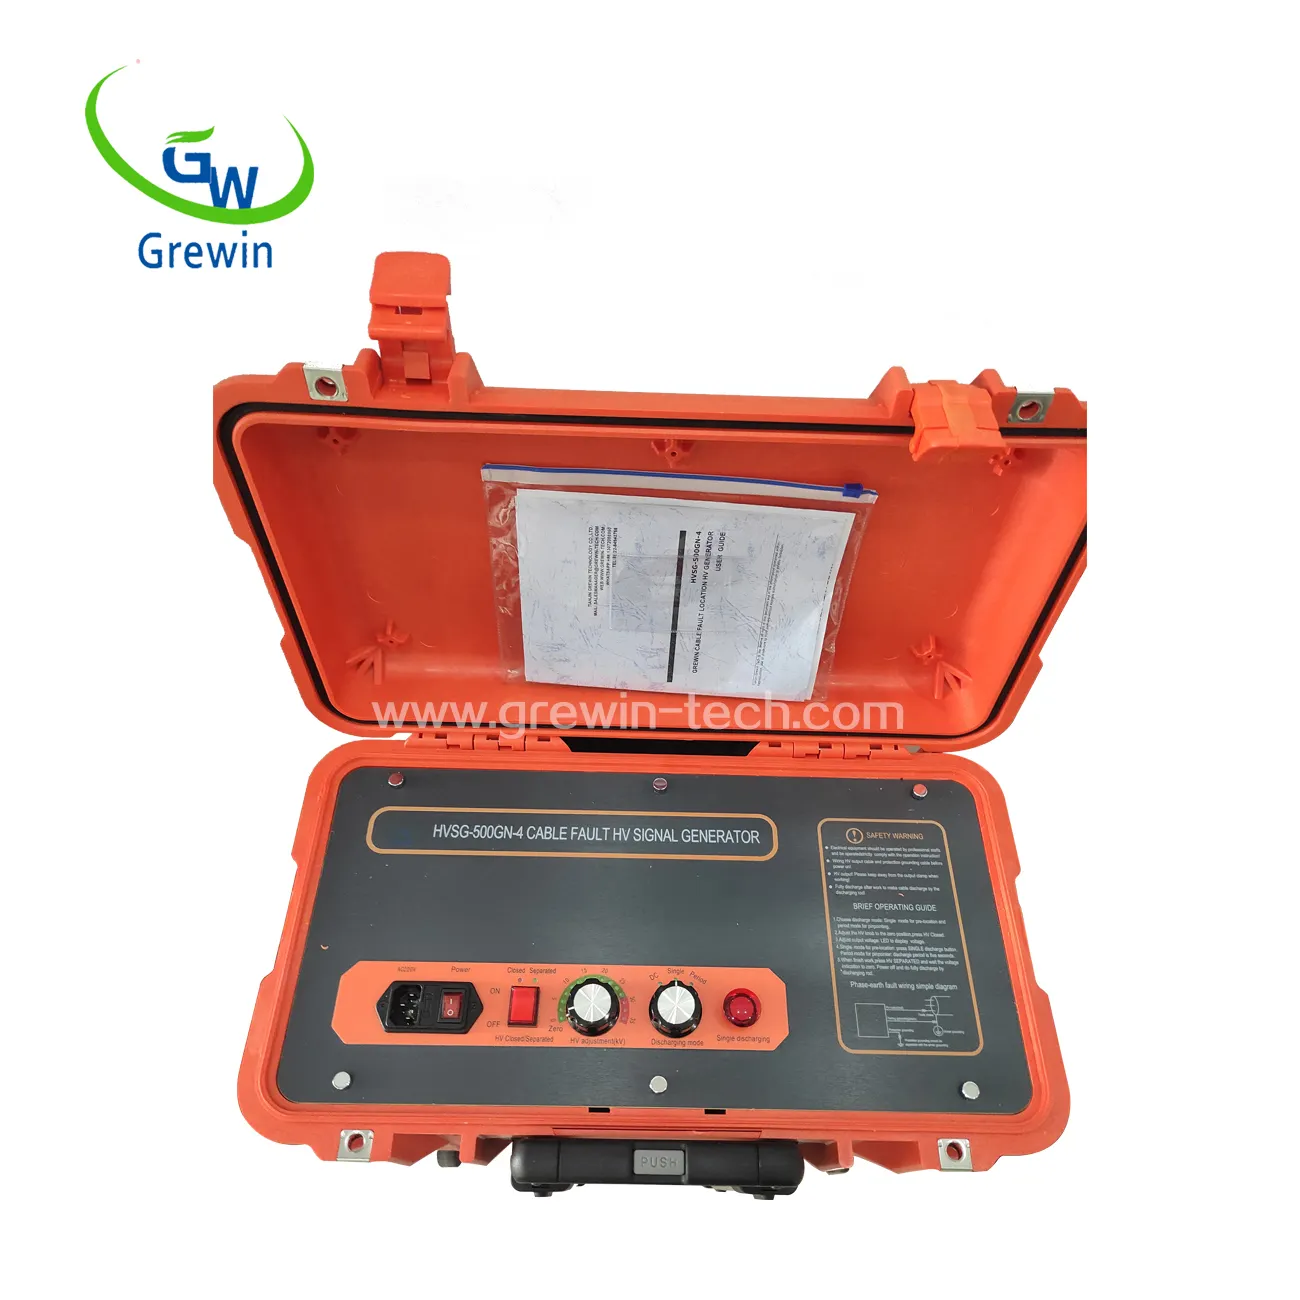 HVSG-500GN DE SEGURIDAD importada, probador de sobretensiones portátil, generador de señal HV integrado para inspección de circuito